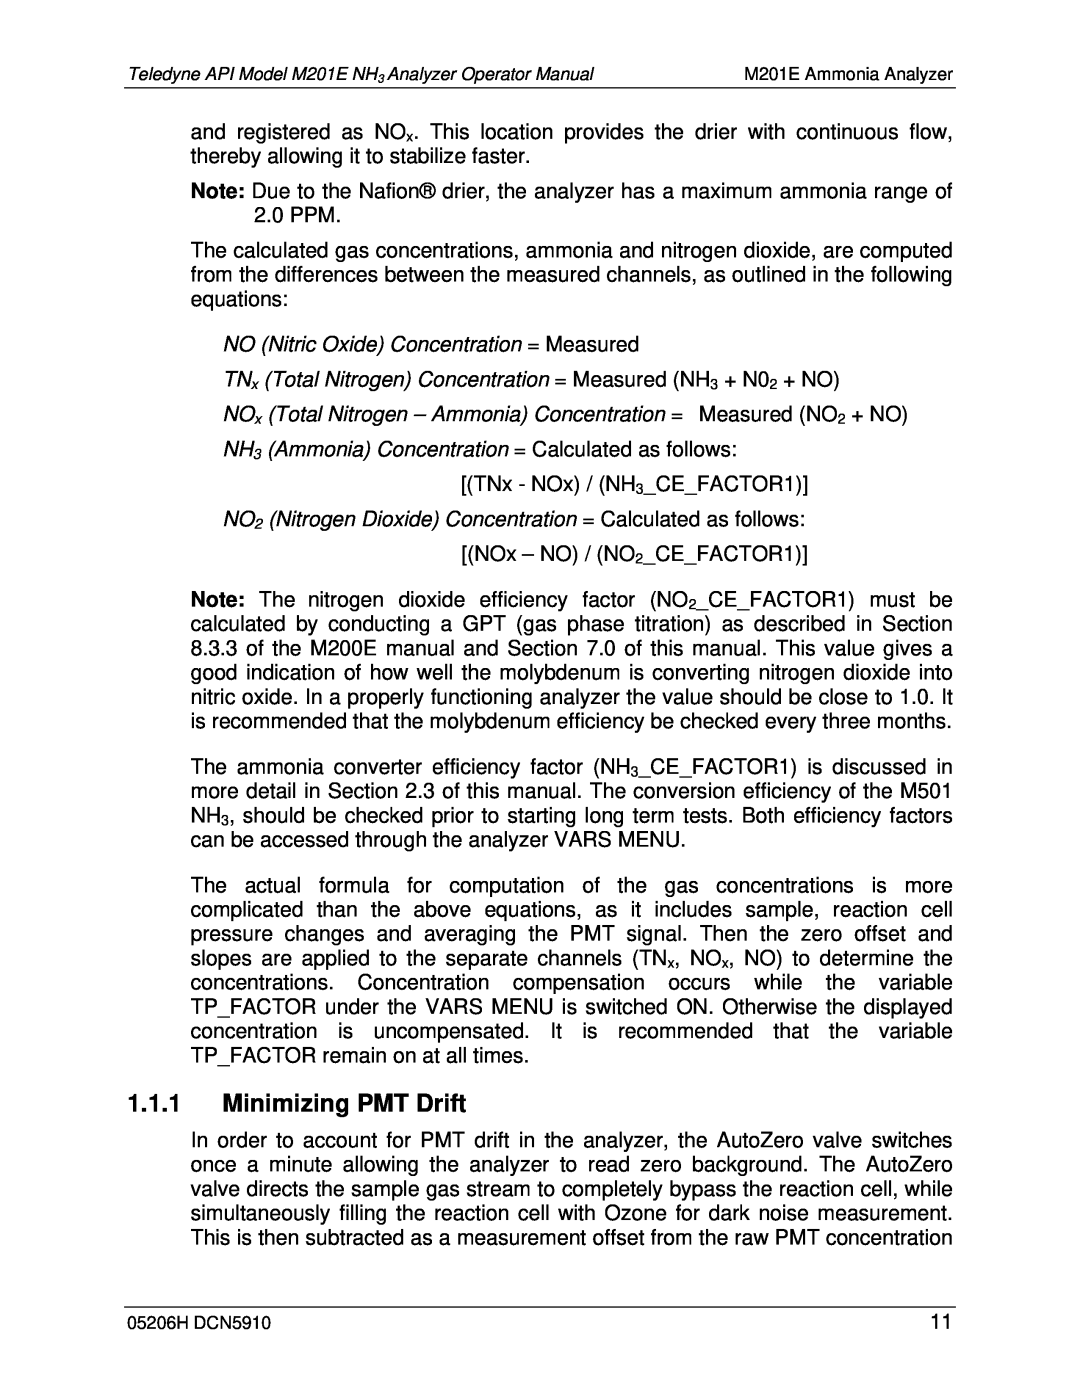 Teledyne M201E manual 1.1.1Minimizing PMT Drift 